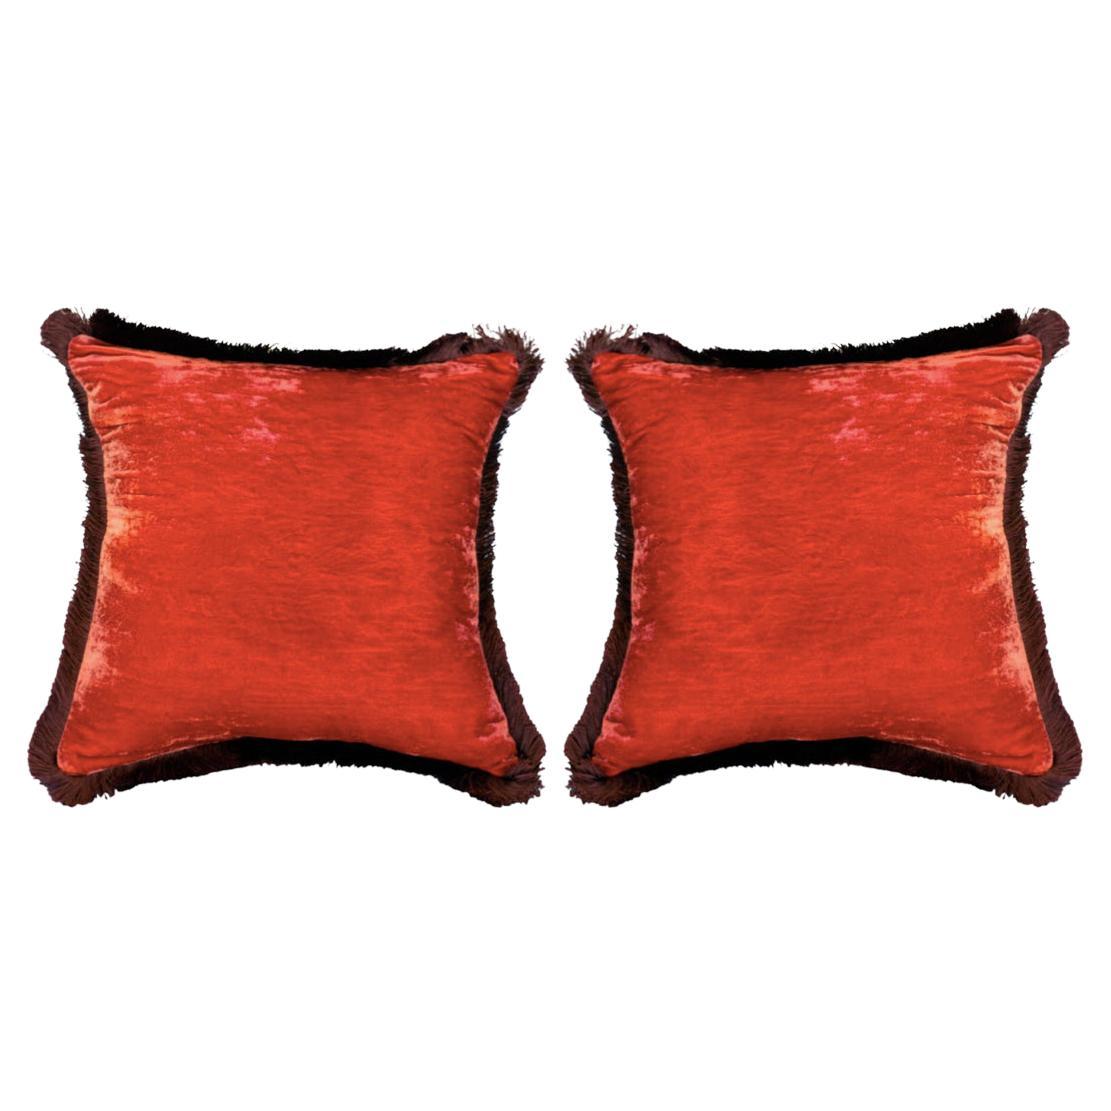 Contemporary Pair of Dark Rose Silk Velvet Pillows with Fringe Border